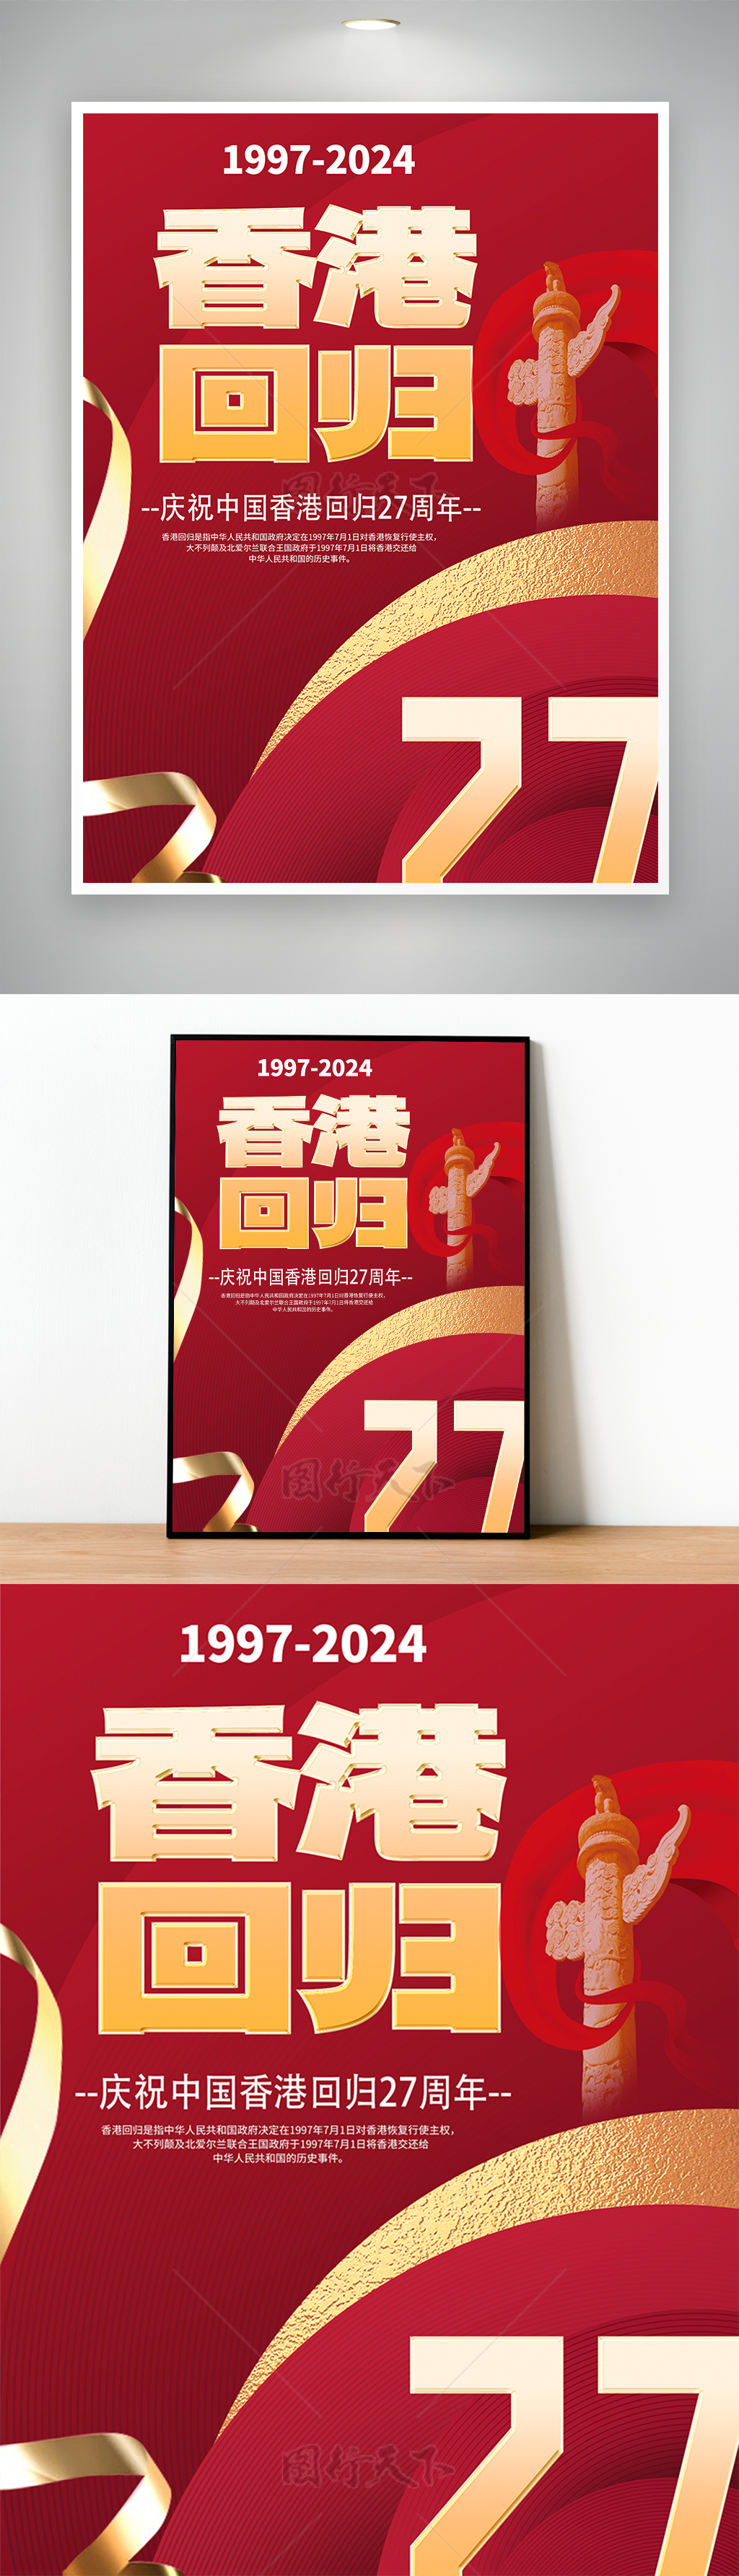 香港回归27周年庆典喜迎新时代回归纪念日海报